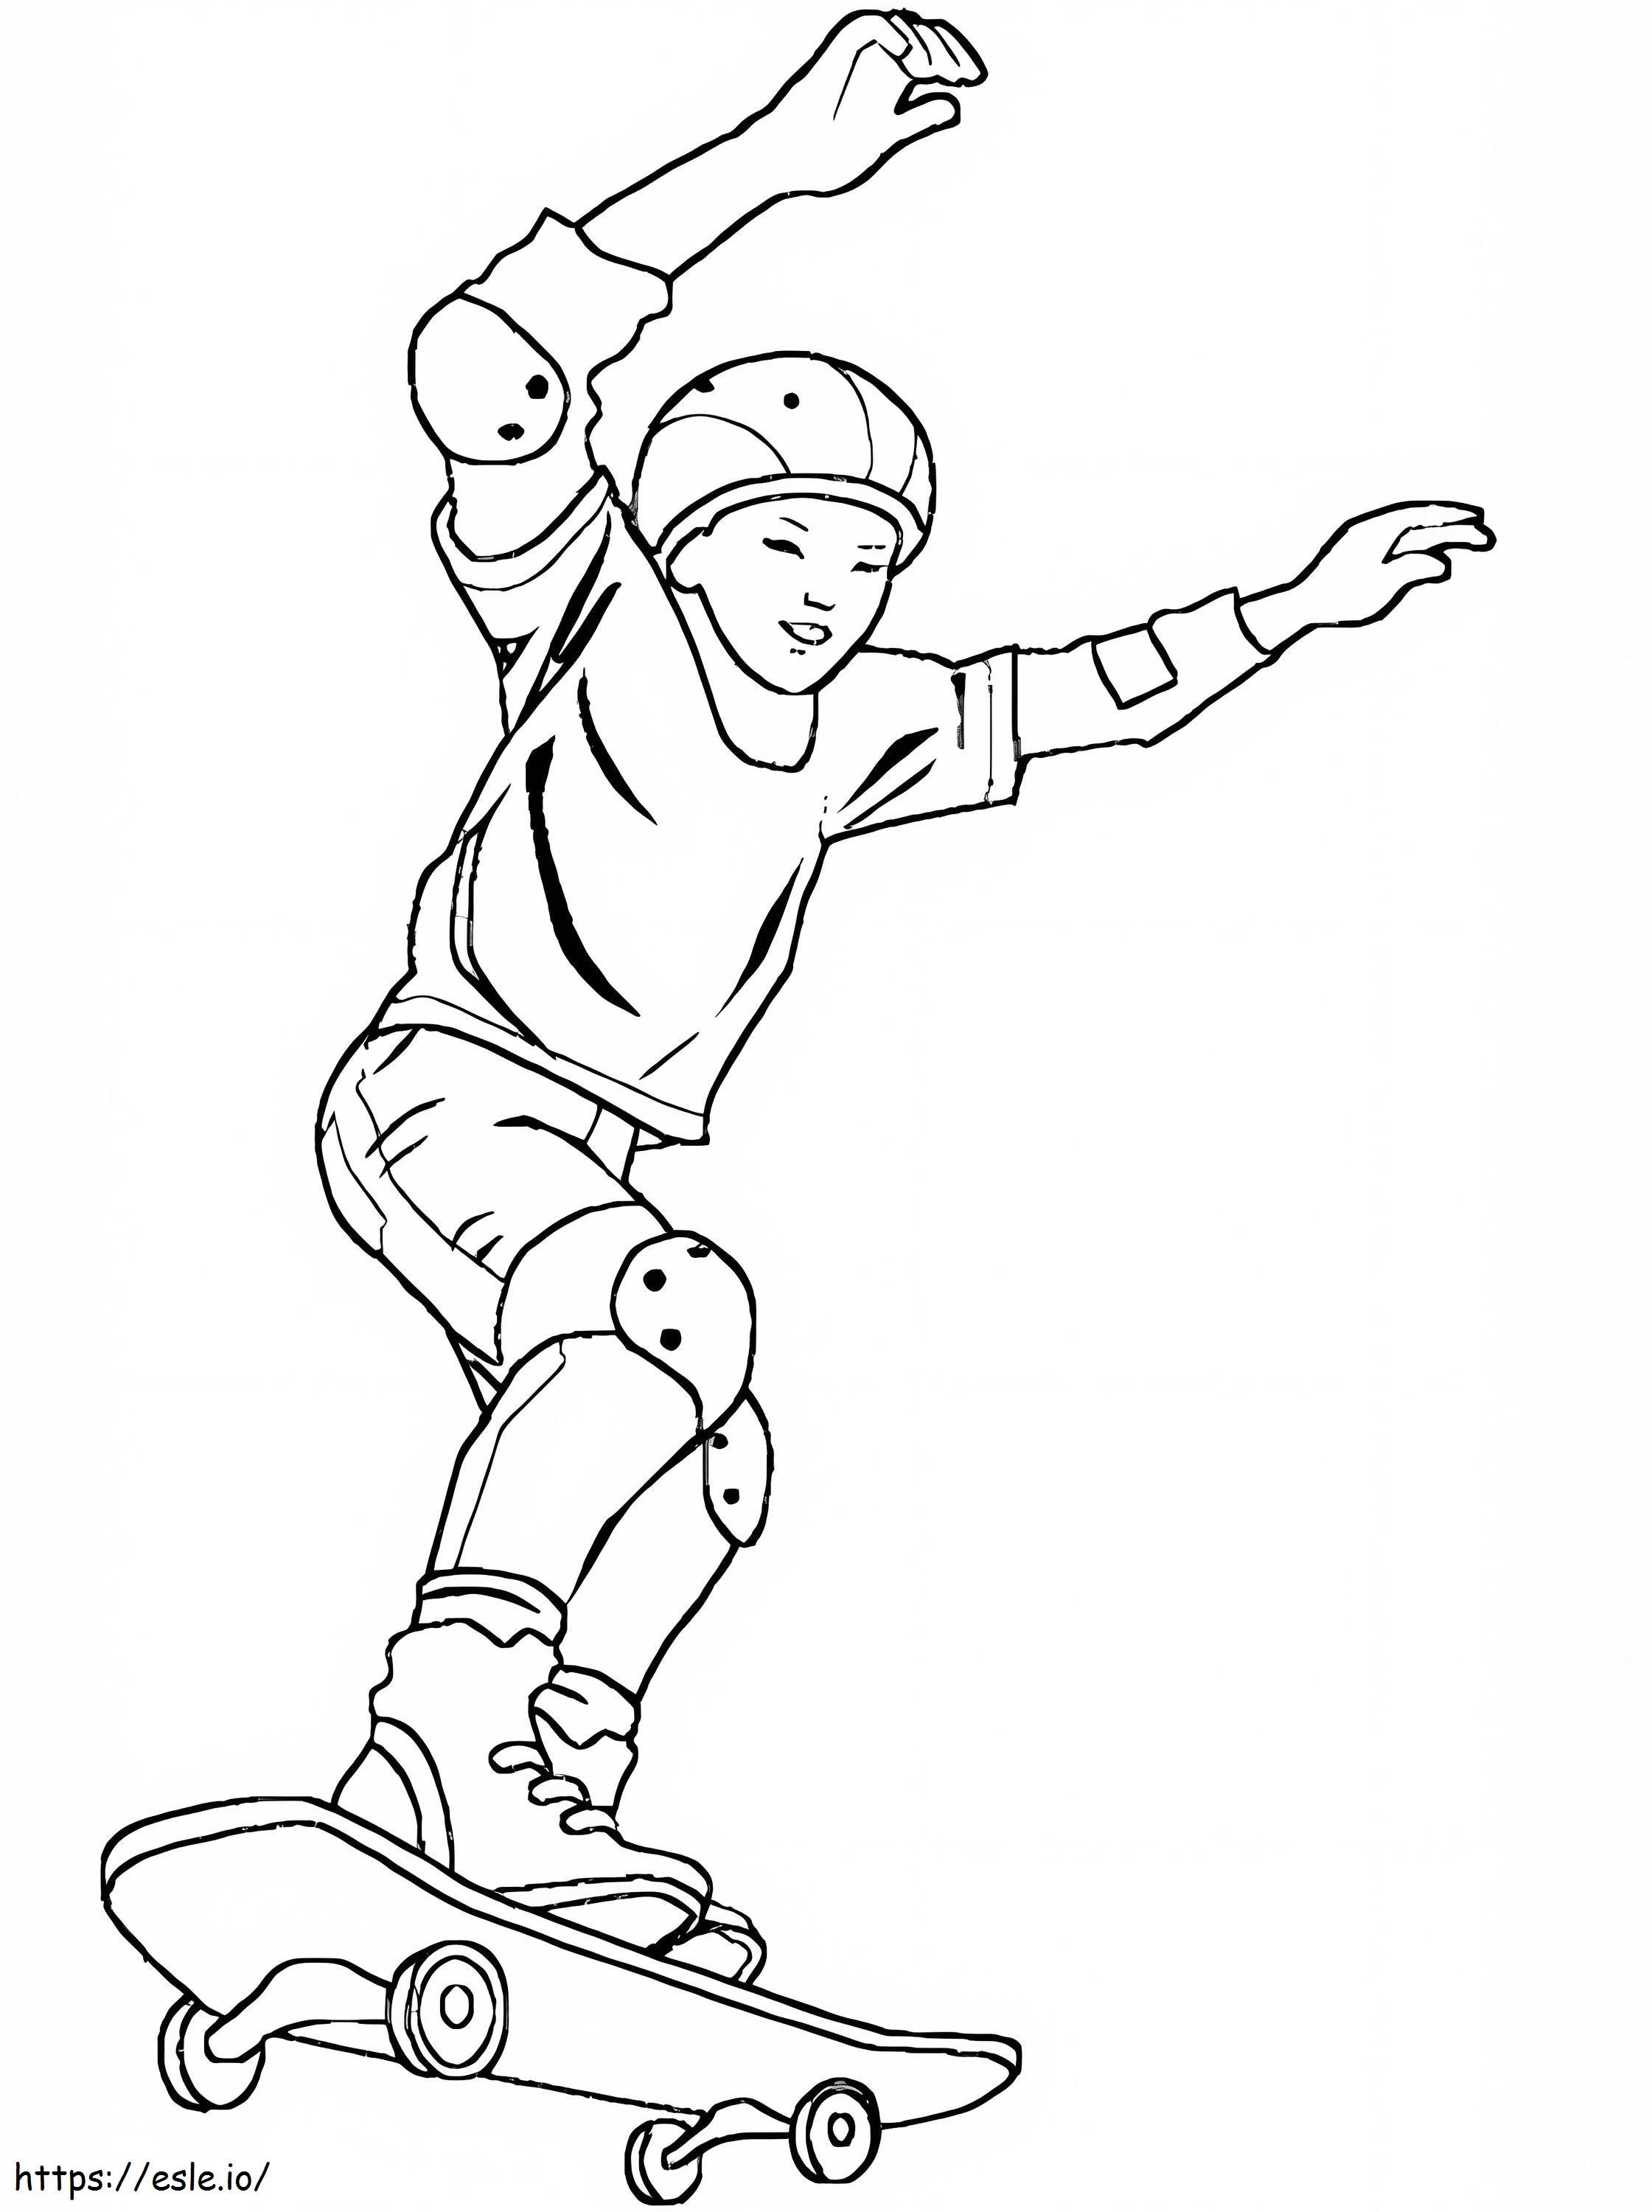 Koele Jongen Op Skateboard kleurplaat kleurplaat